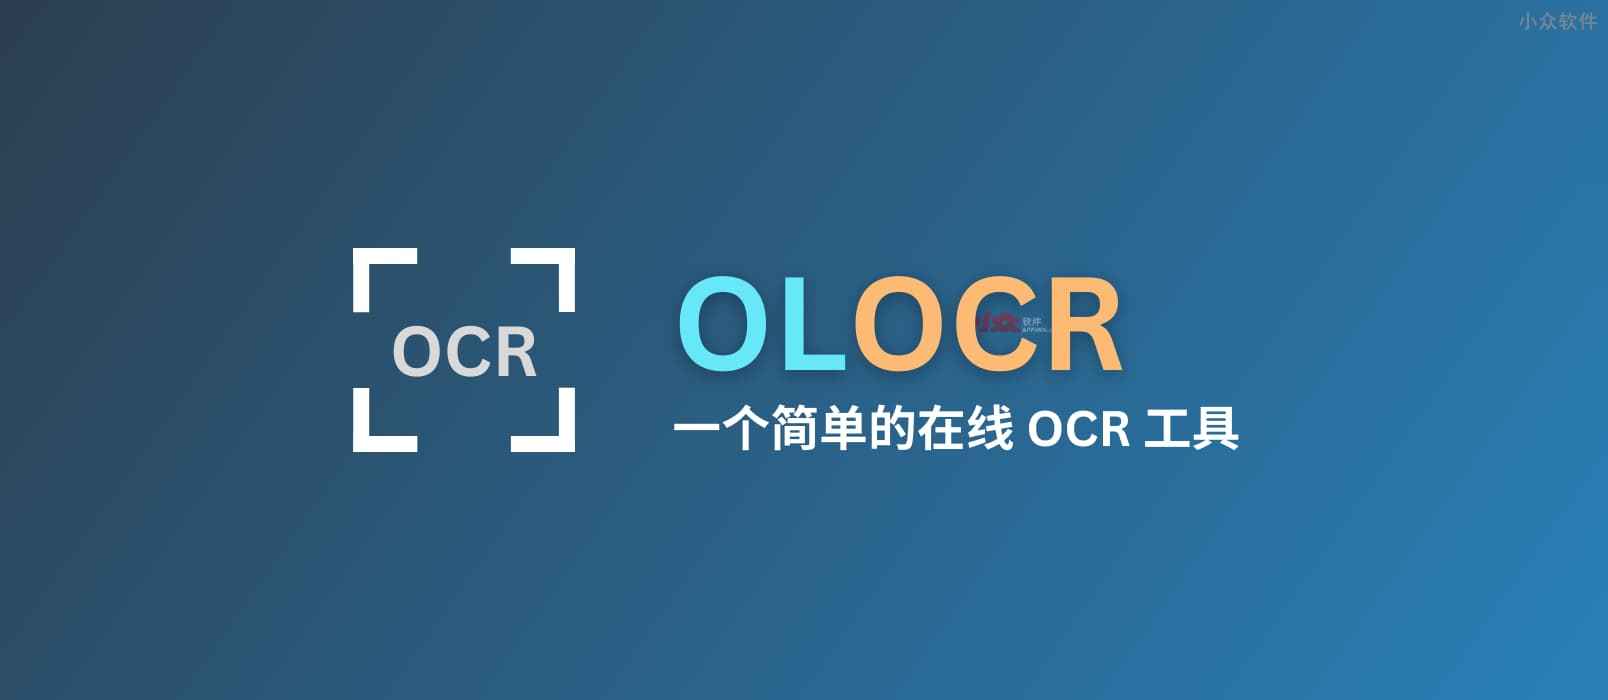 OLOCR – 一个简单易用的在线 OCR 文字识别工具，支持图片、PDF